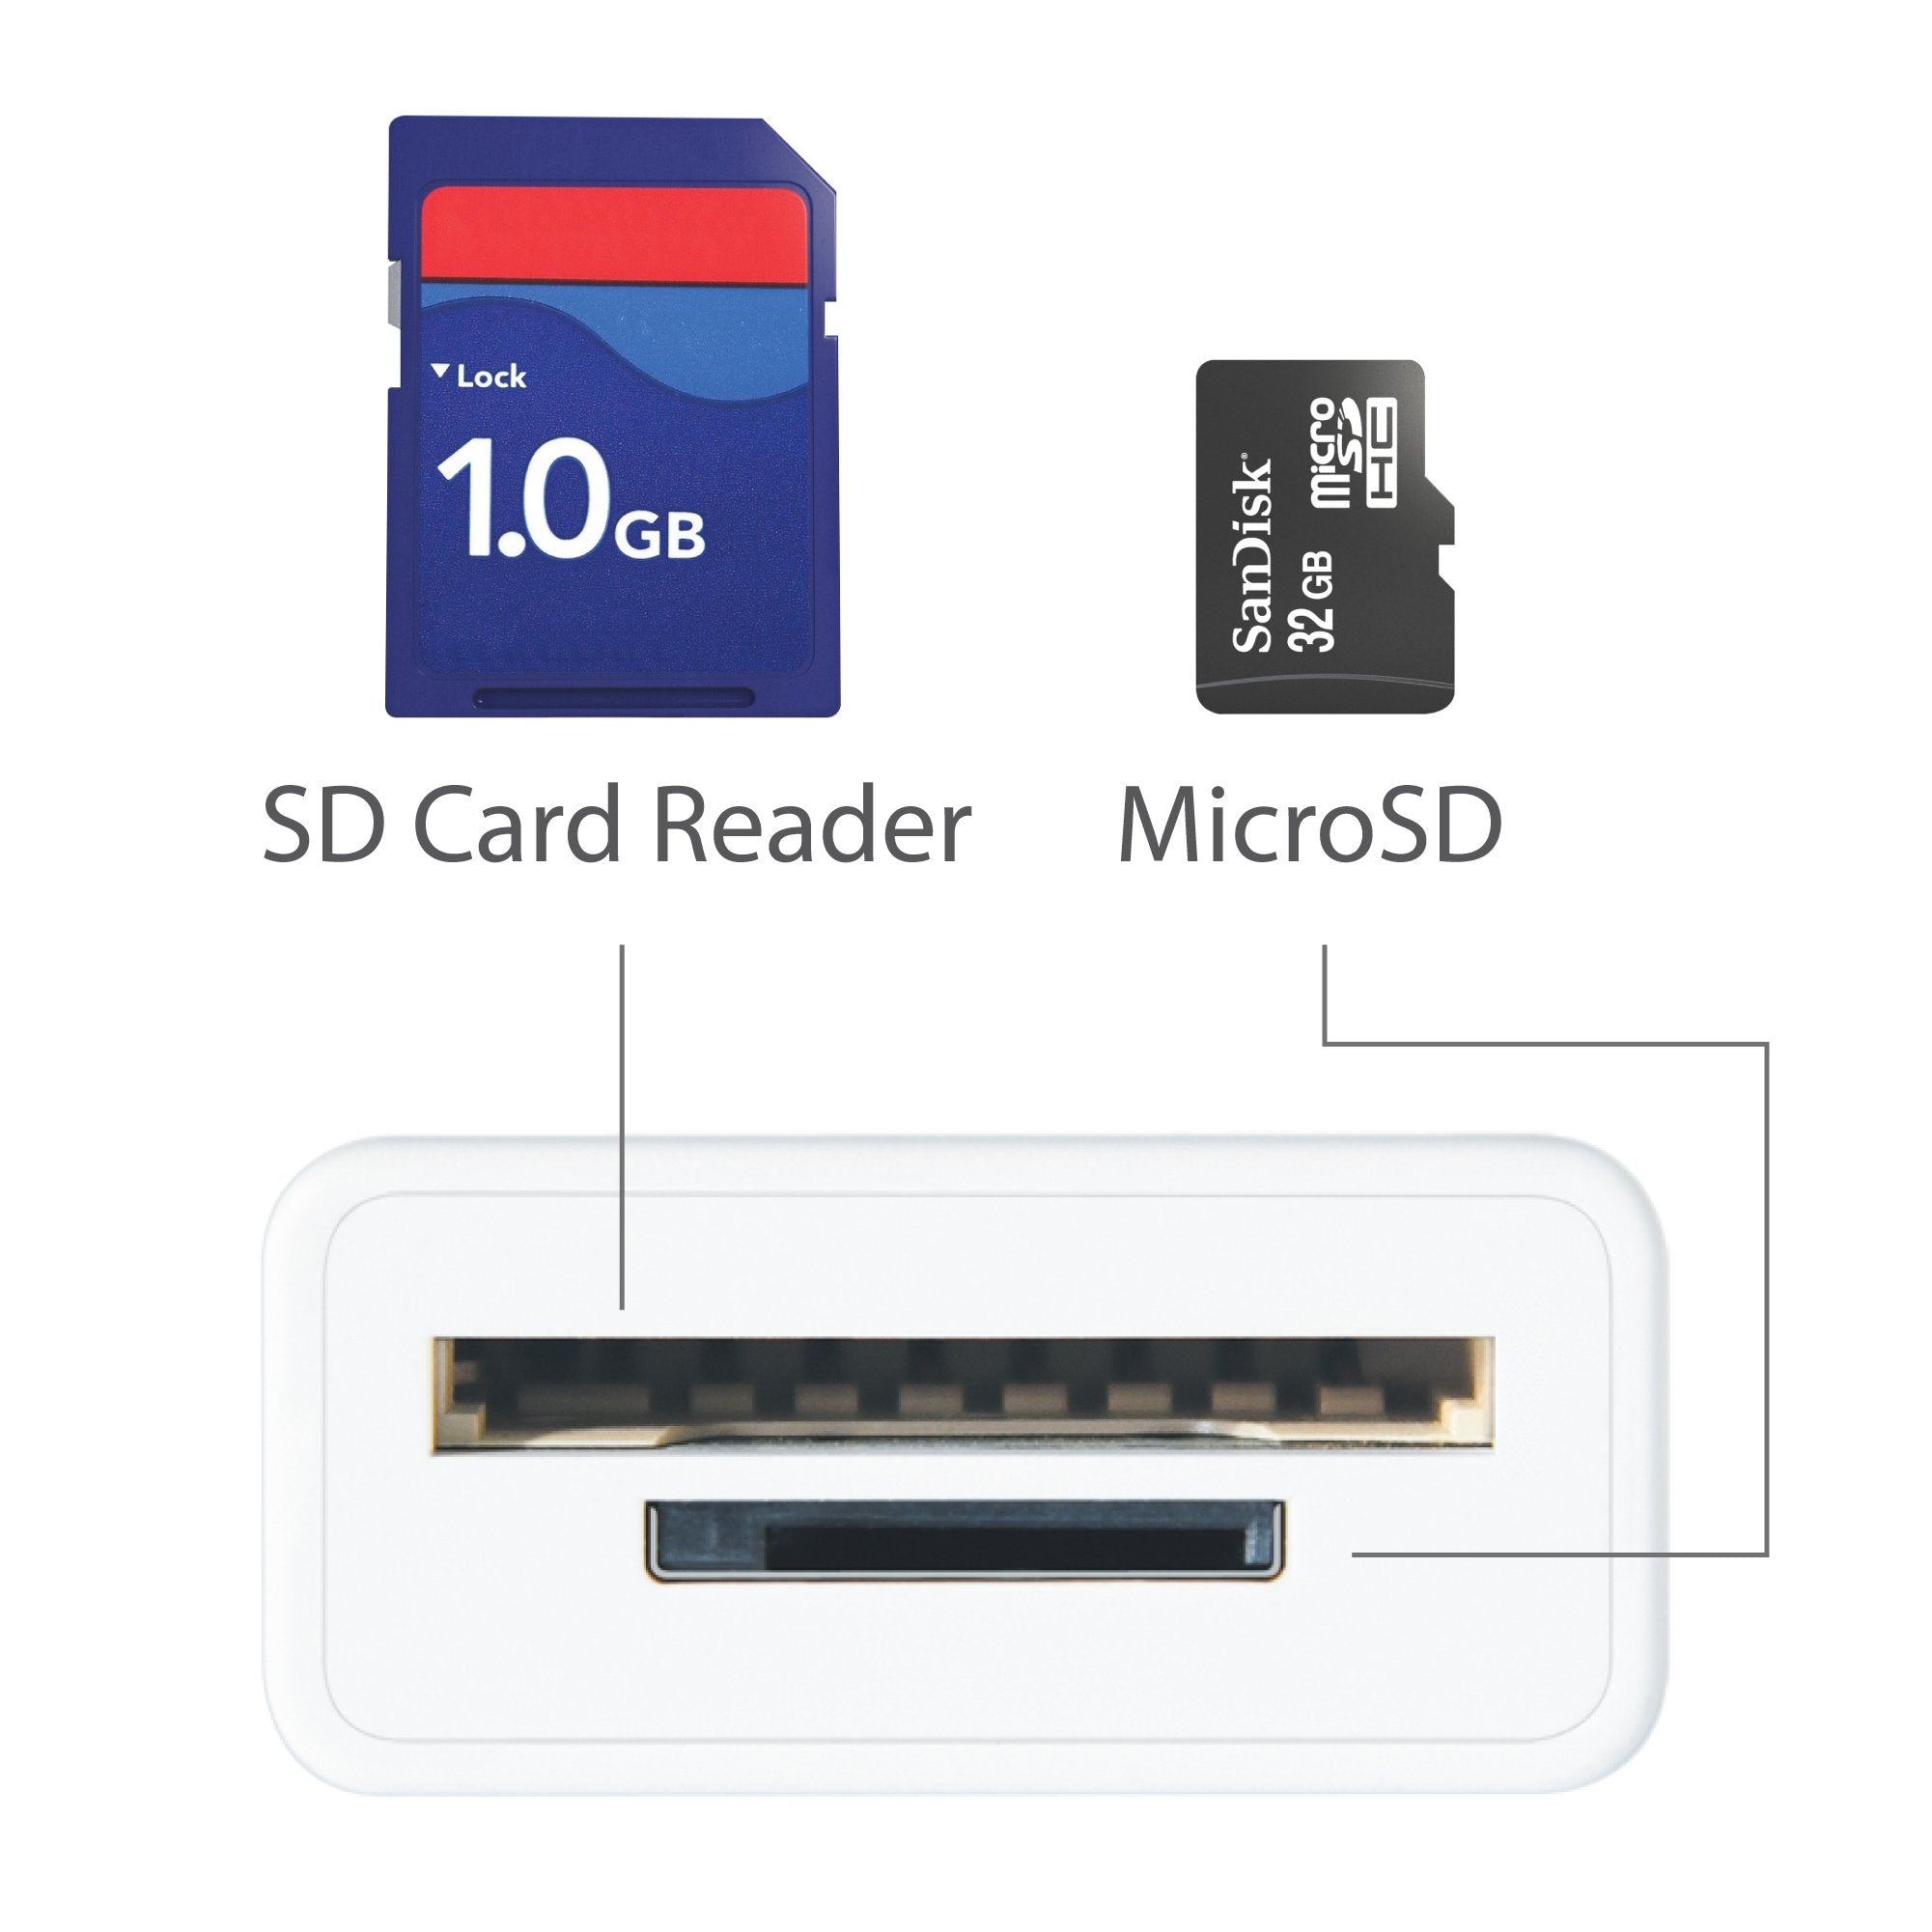 絶対的存在へ。手放せない極上 j5create USB-C with 5in1 j5create ミニ Port USB ドッキングステーション  Card マルチ SD/Micro ハブ Type-C 3.1 USB3.0 x 3、SD， SD microSDカードリーダ  localhost